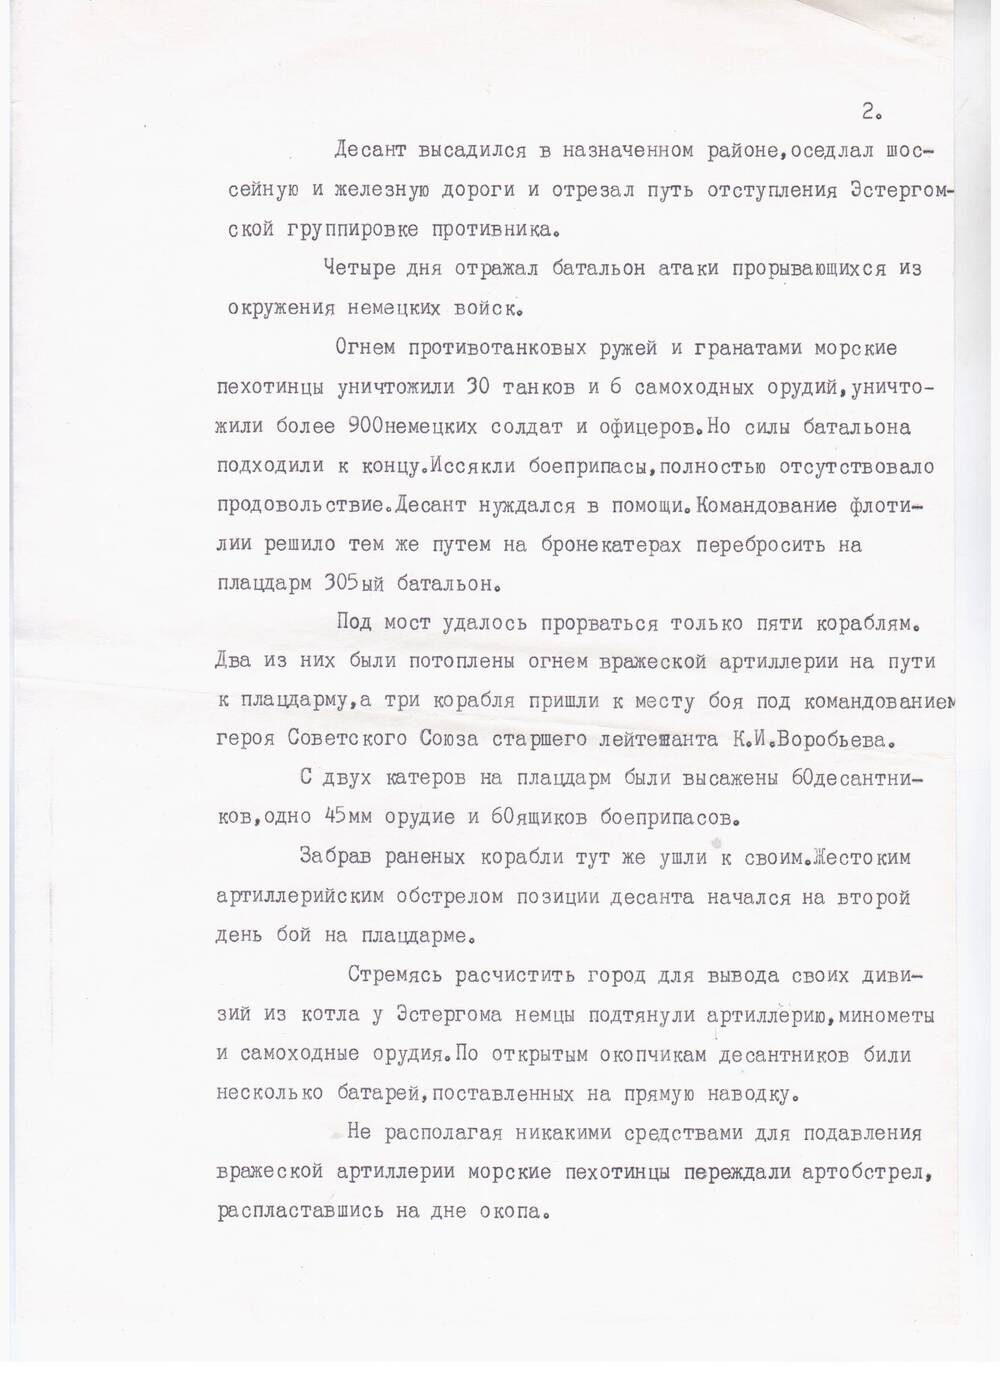 Справочный материал: Русский перевод статьи из венгерского журнала об операции десанта в марте 1945 года в городе Эстергом и Тат.